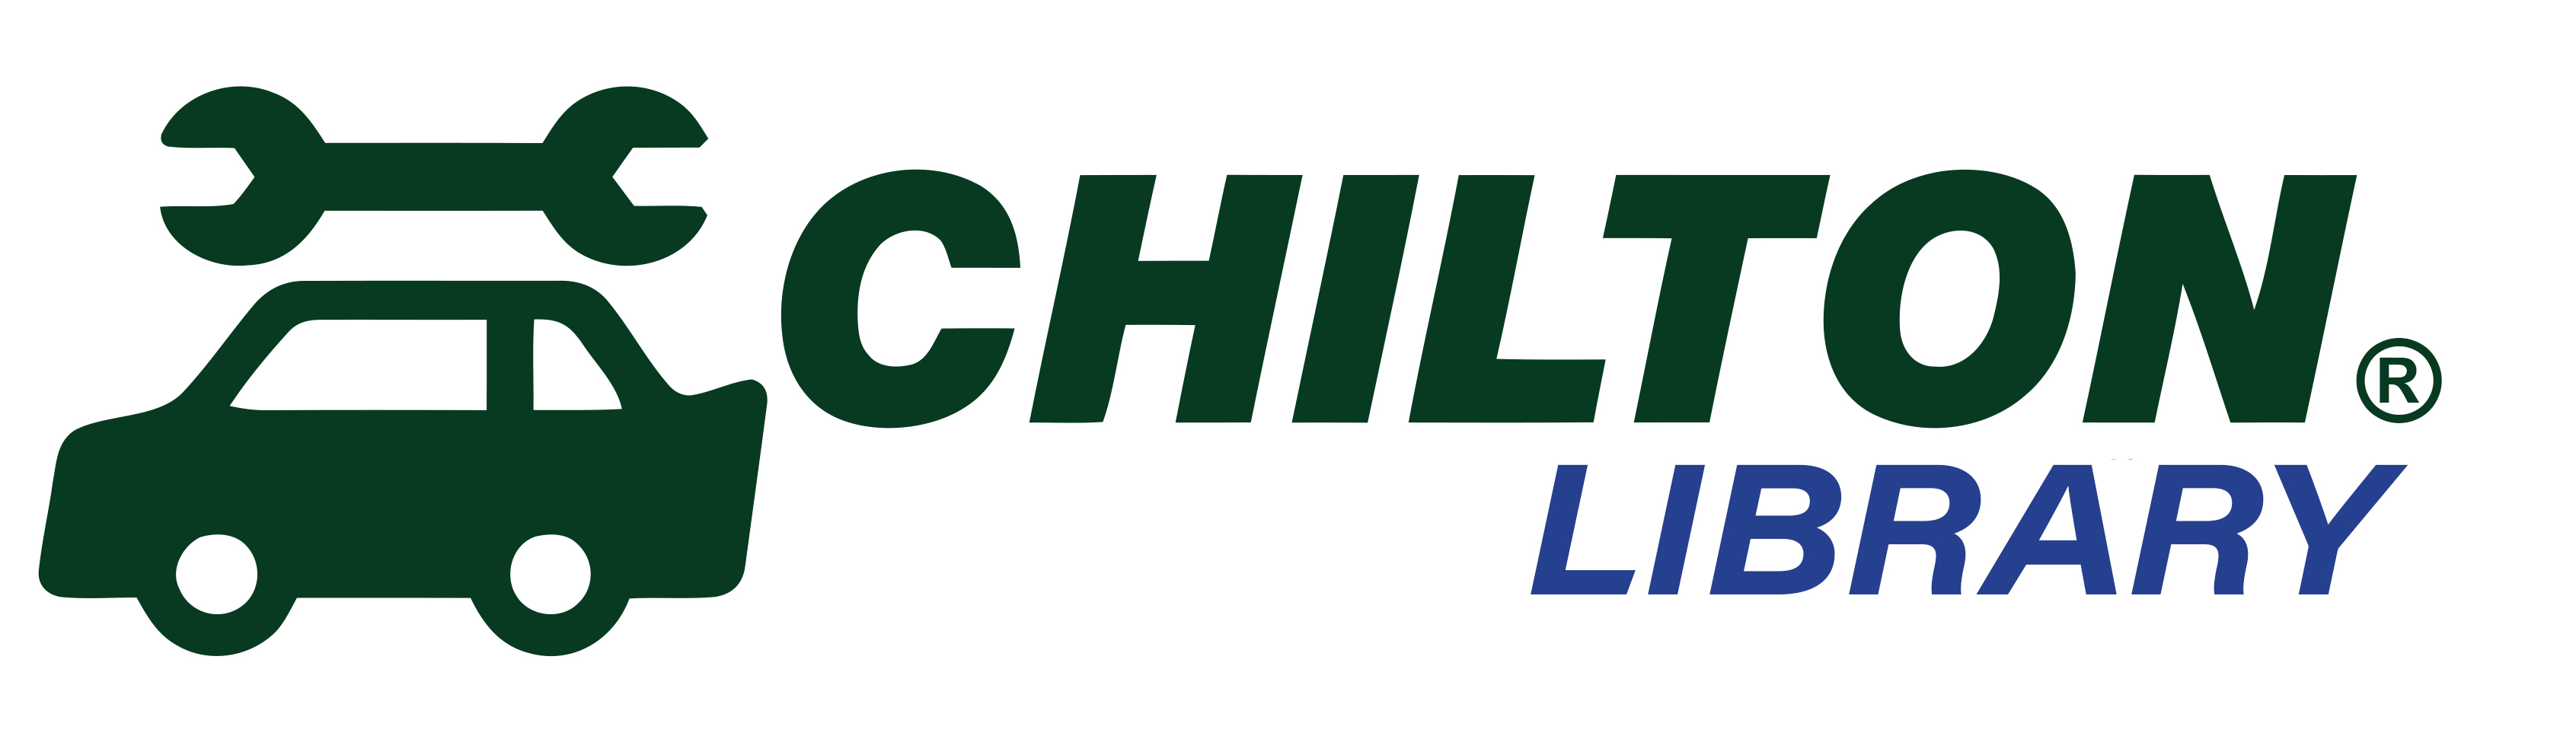 Chilton County Chess Club — Chilton Clanton Public Library